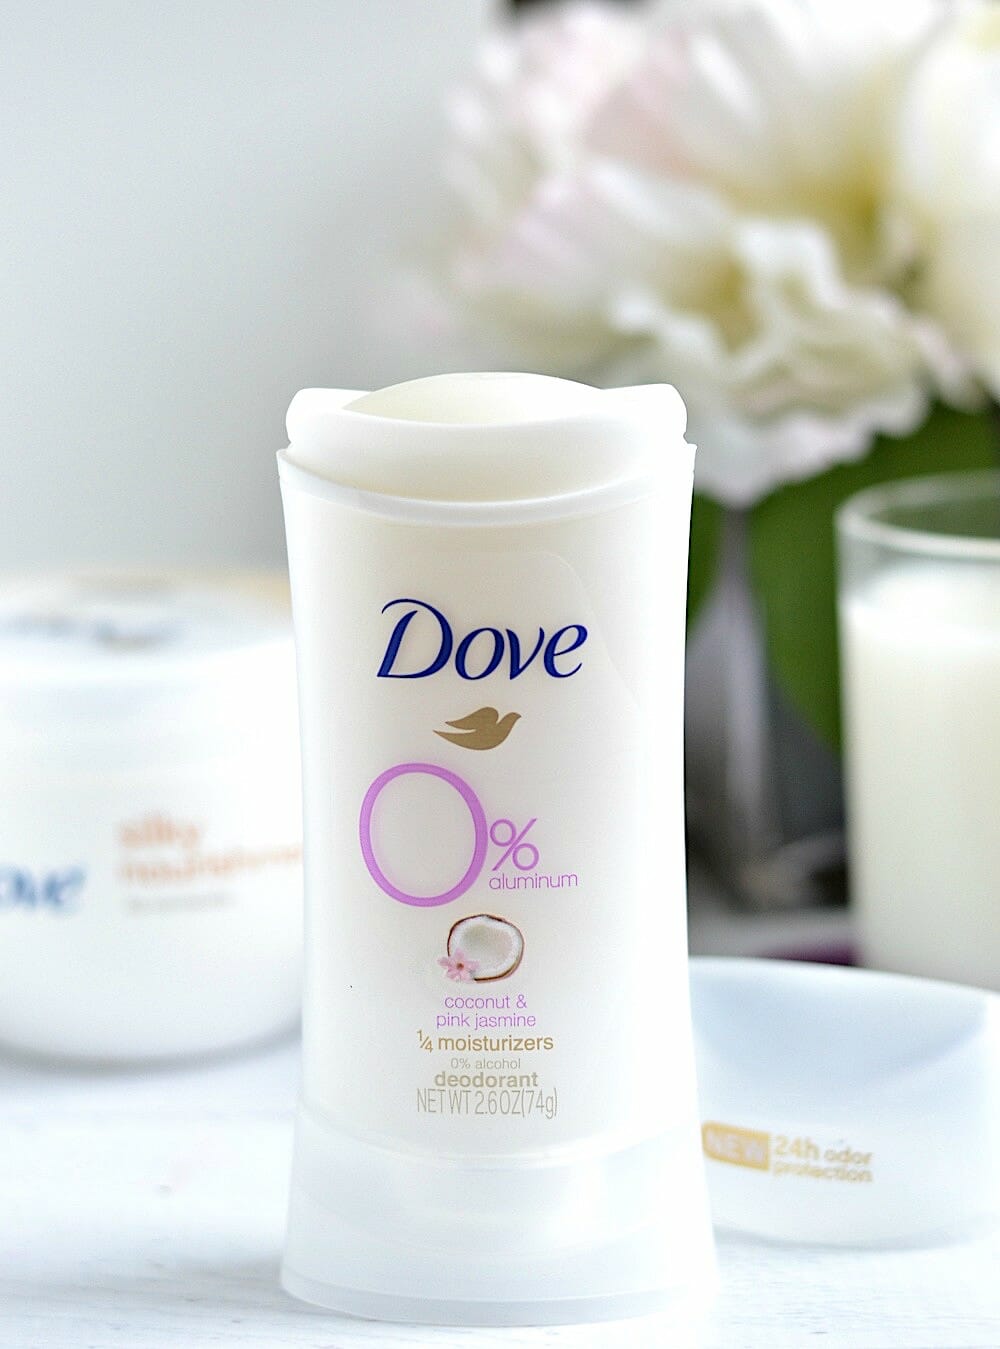 Dove Aluminum-Free Deodorant review